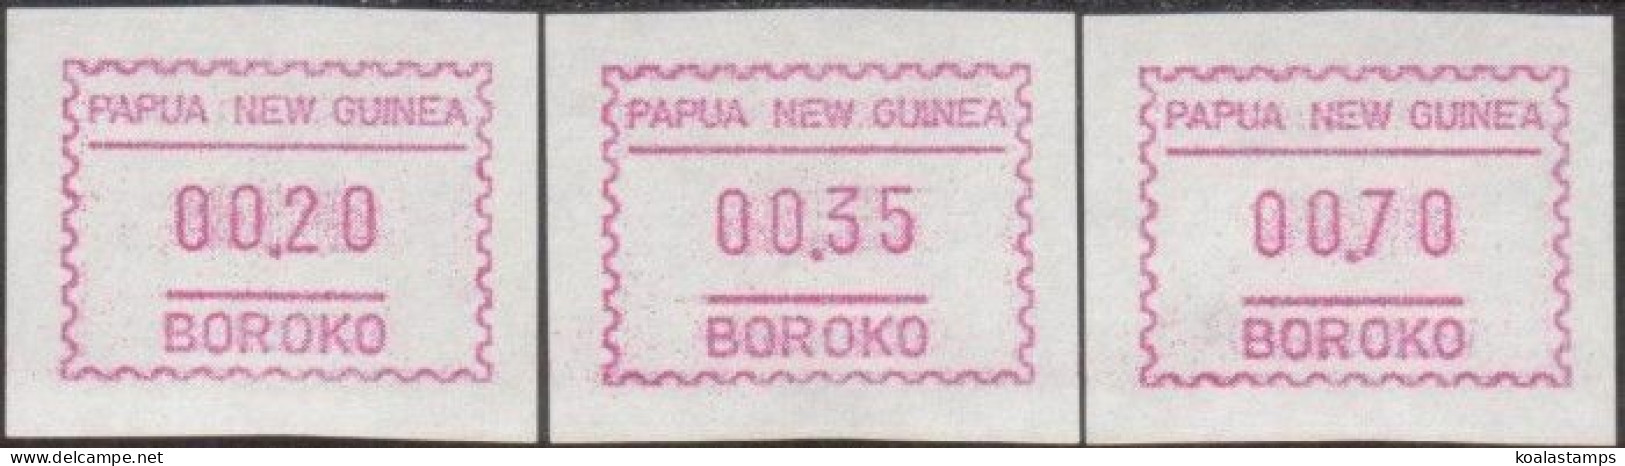 Papua New Guinea 1990 SG614f Framas Set MNH - Papouasie-Nouvelle-Guinée